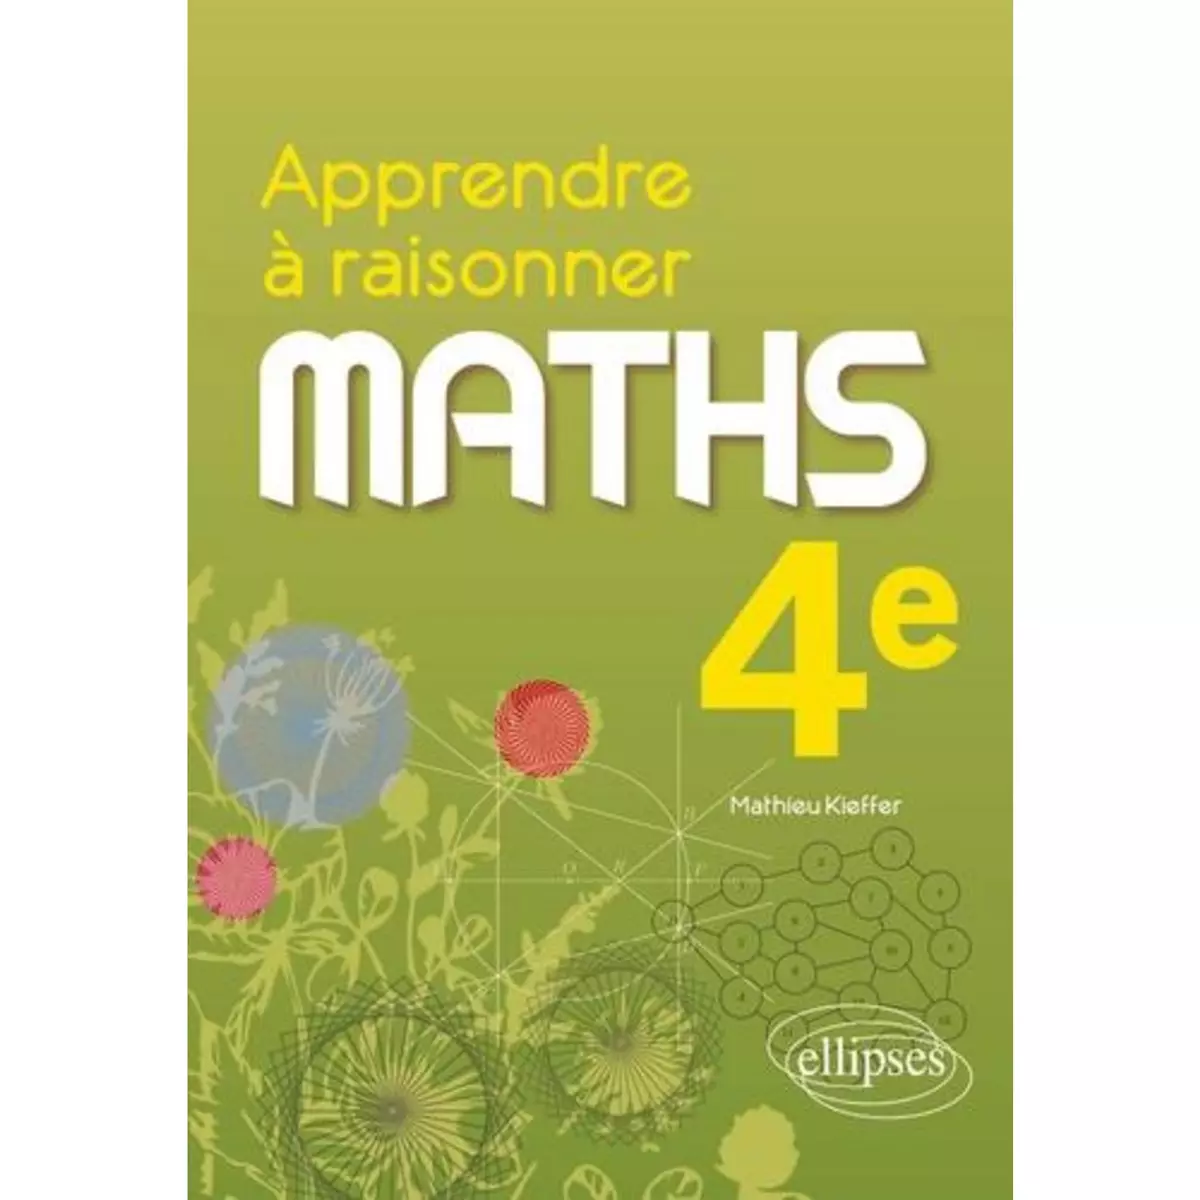  MATHS 4E APPRENDRE A RAISONNER, Kieffer Mathieu